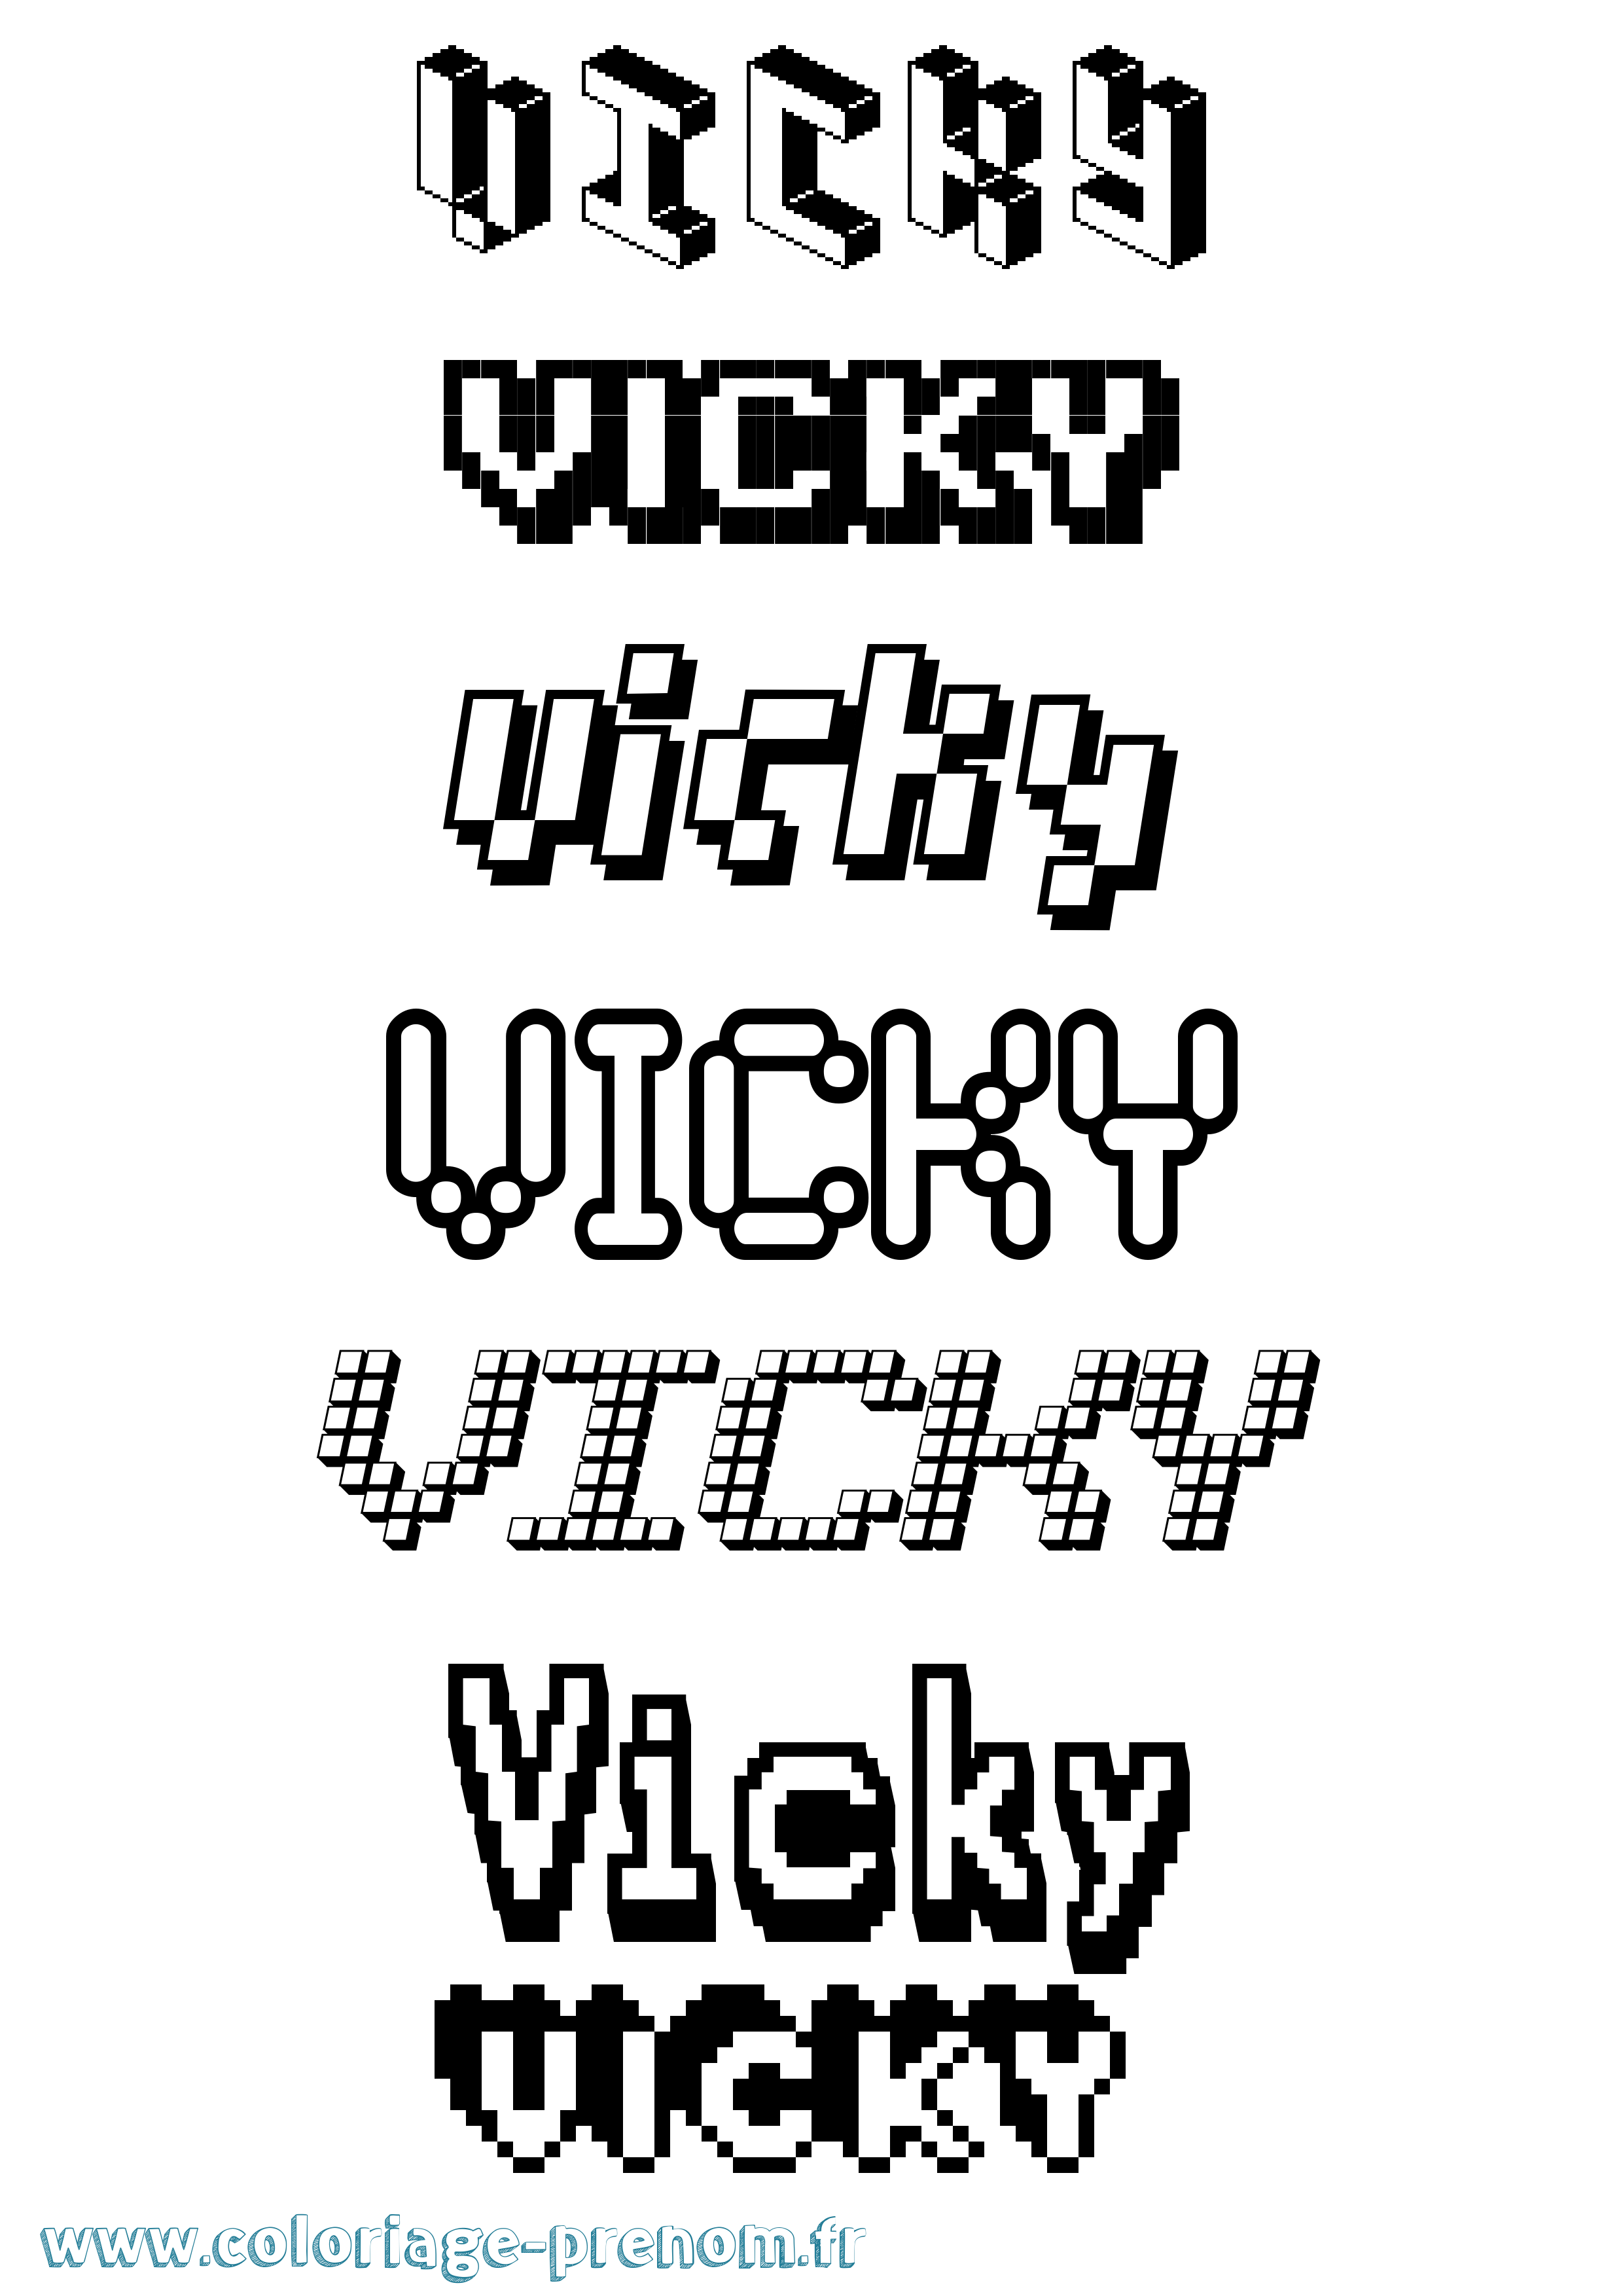 Coloriage prénom Vicky Pixel